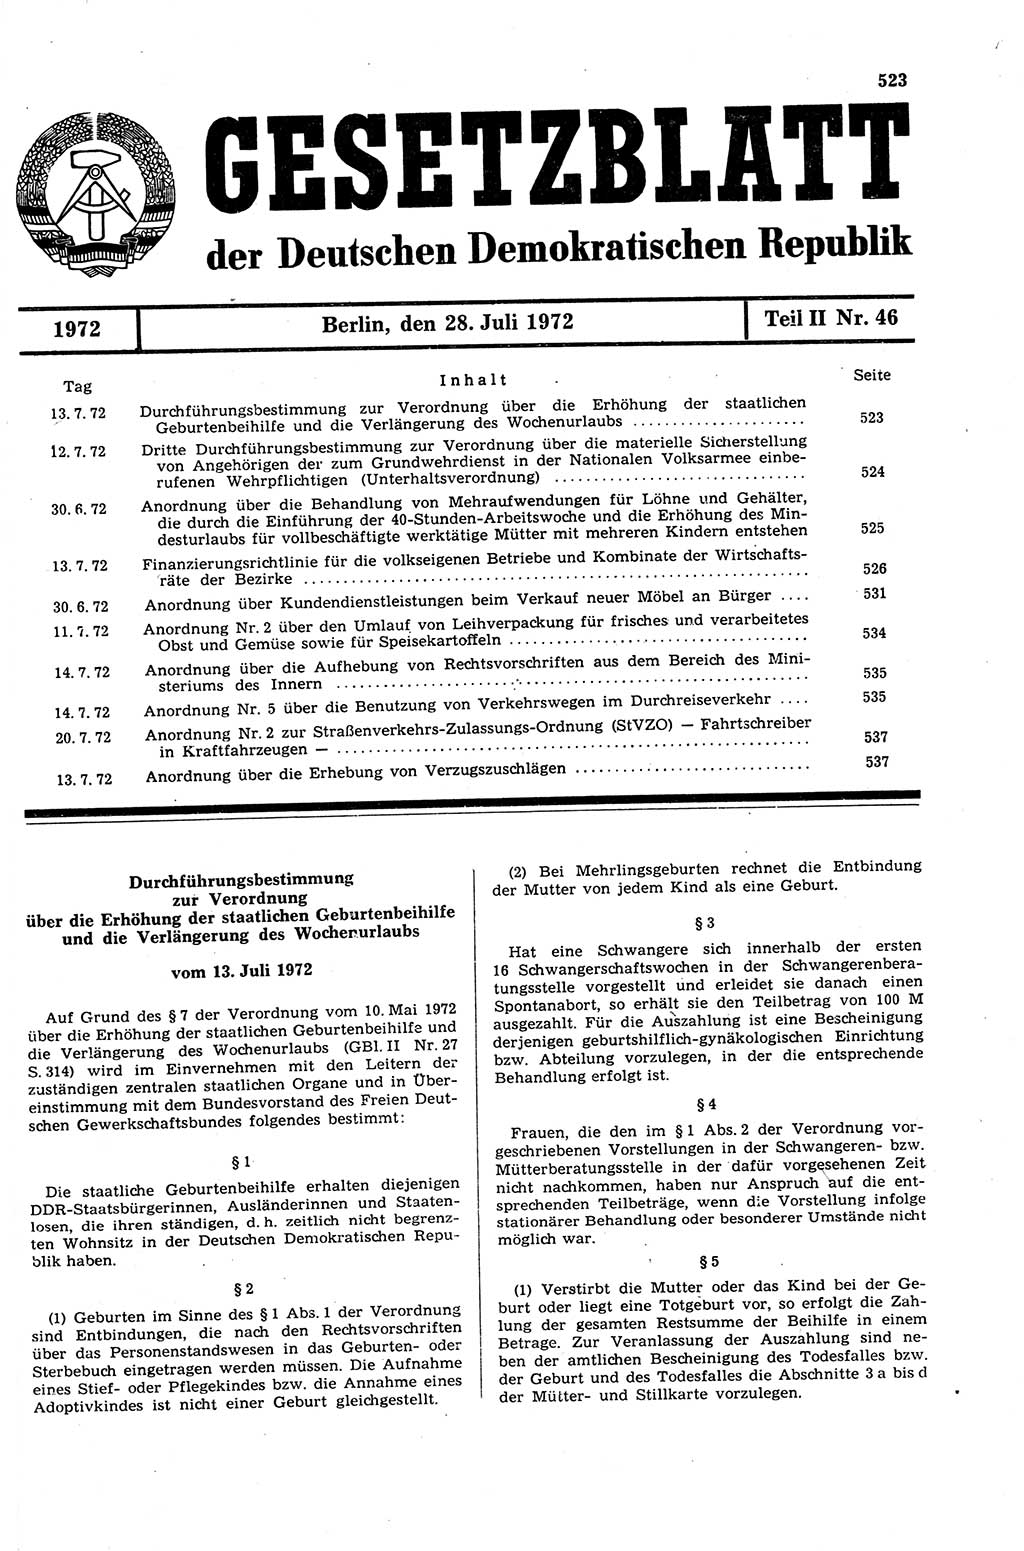 Gesetzblatt (GBl.) der Deutschen Demokratischen Republik (DDR) Teil ⅠⅠ 1972, Seite 523 (GBl. DDR ⅠⅠ 1972, S. 523)